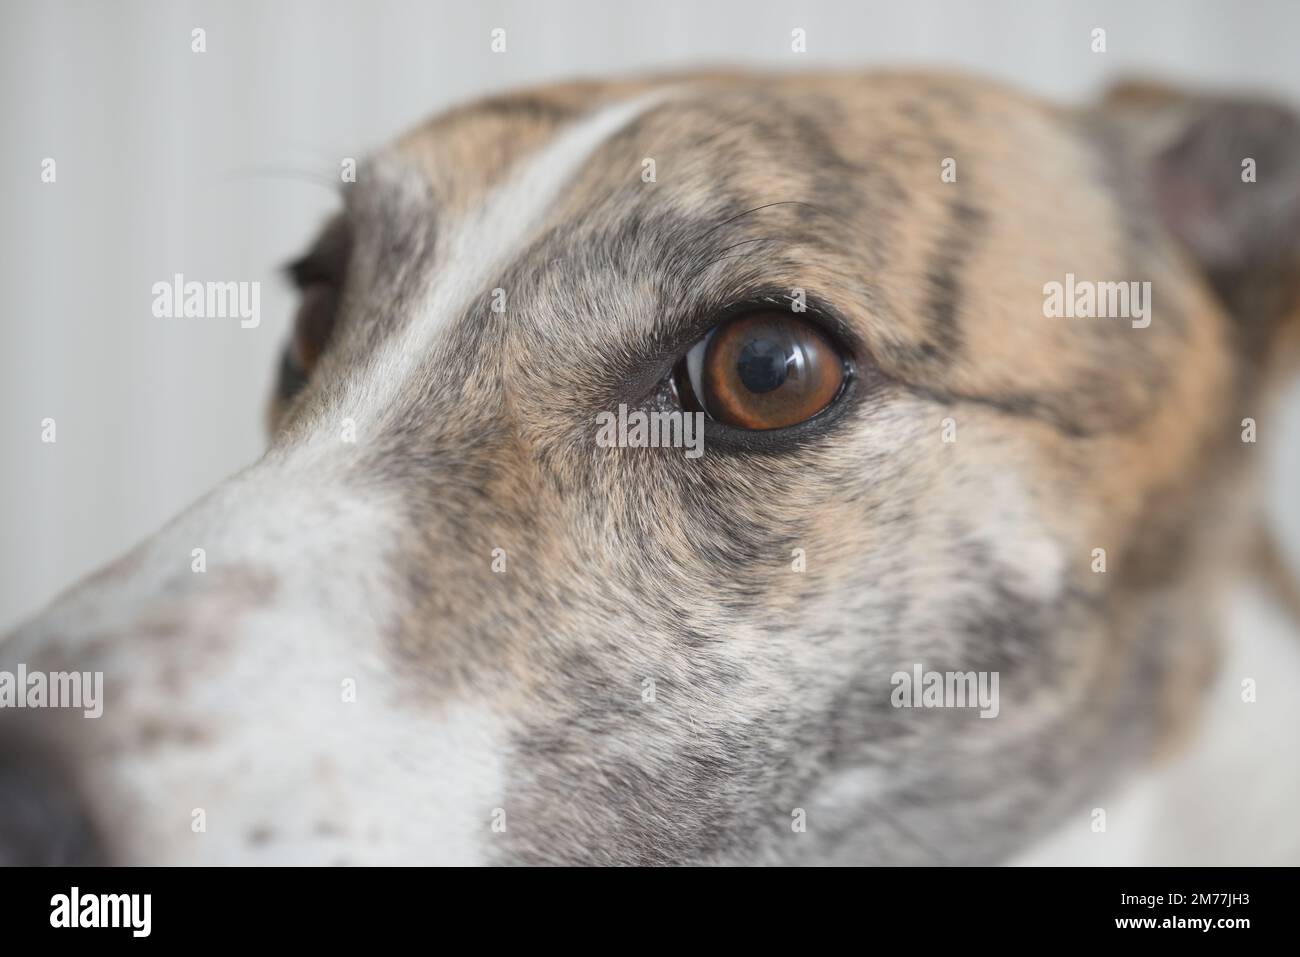 Gros plan de la face des grayhounds avec le long nez regardant à gauche. Image plein format sur fond blanc Uni. Accent sélectif sur les chiens grand oeil brun. Banque D'Images